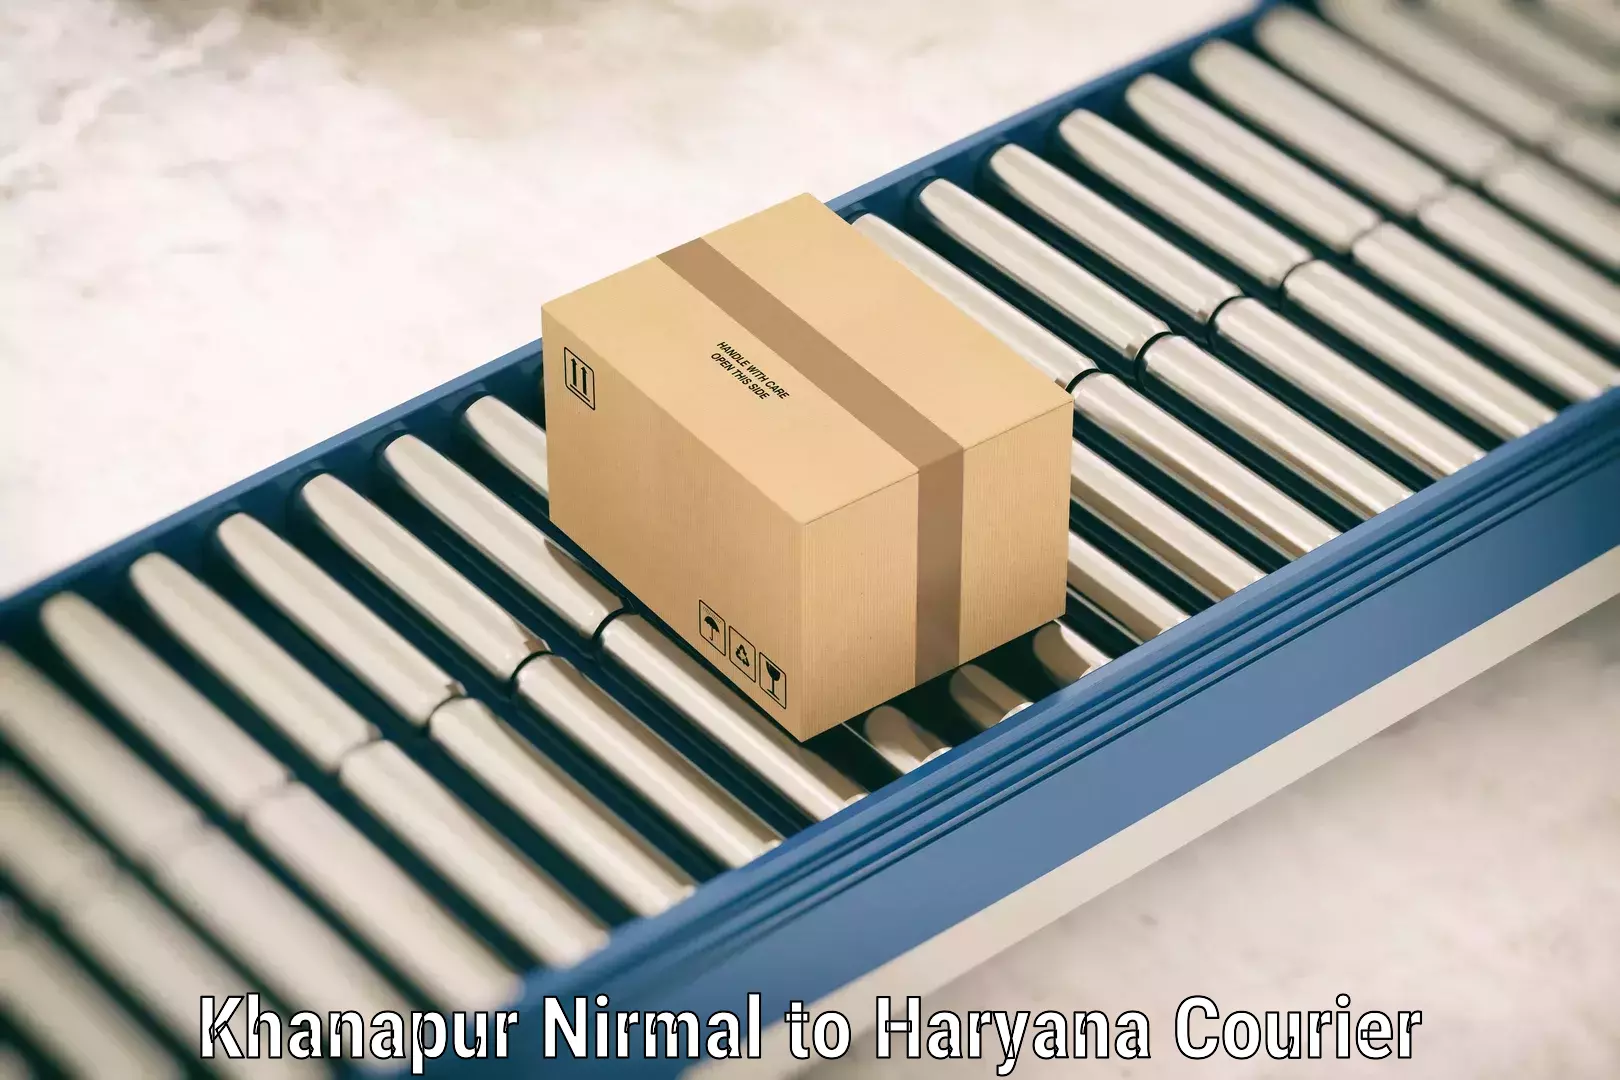 Luggage shipping efficiency Khanapur Nirmal to Chaudhary Charan Singh Haryana Agricultural University Hisar